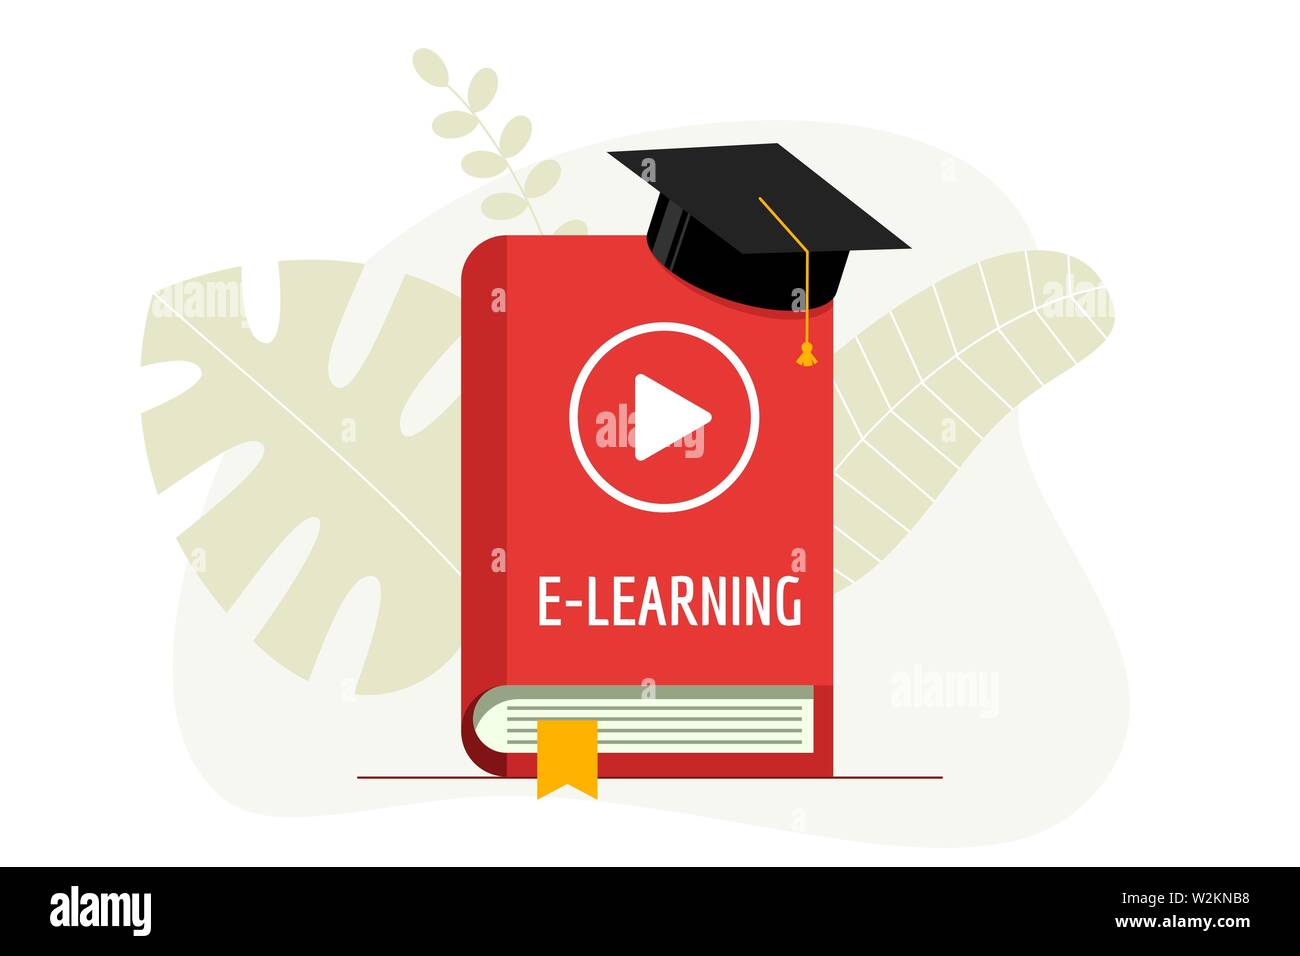 E-Learning mit Play-Video-Symbol auf rotem Titelbuch und Abschlusskappe. Academy hat auf Online-Bildung Studium und Internet-Lehre Hausaufgaben Webinar-Konzept. Vektorgrafik flach Stock Vektor